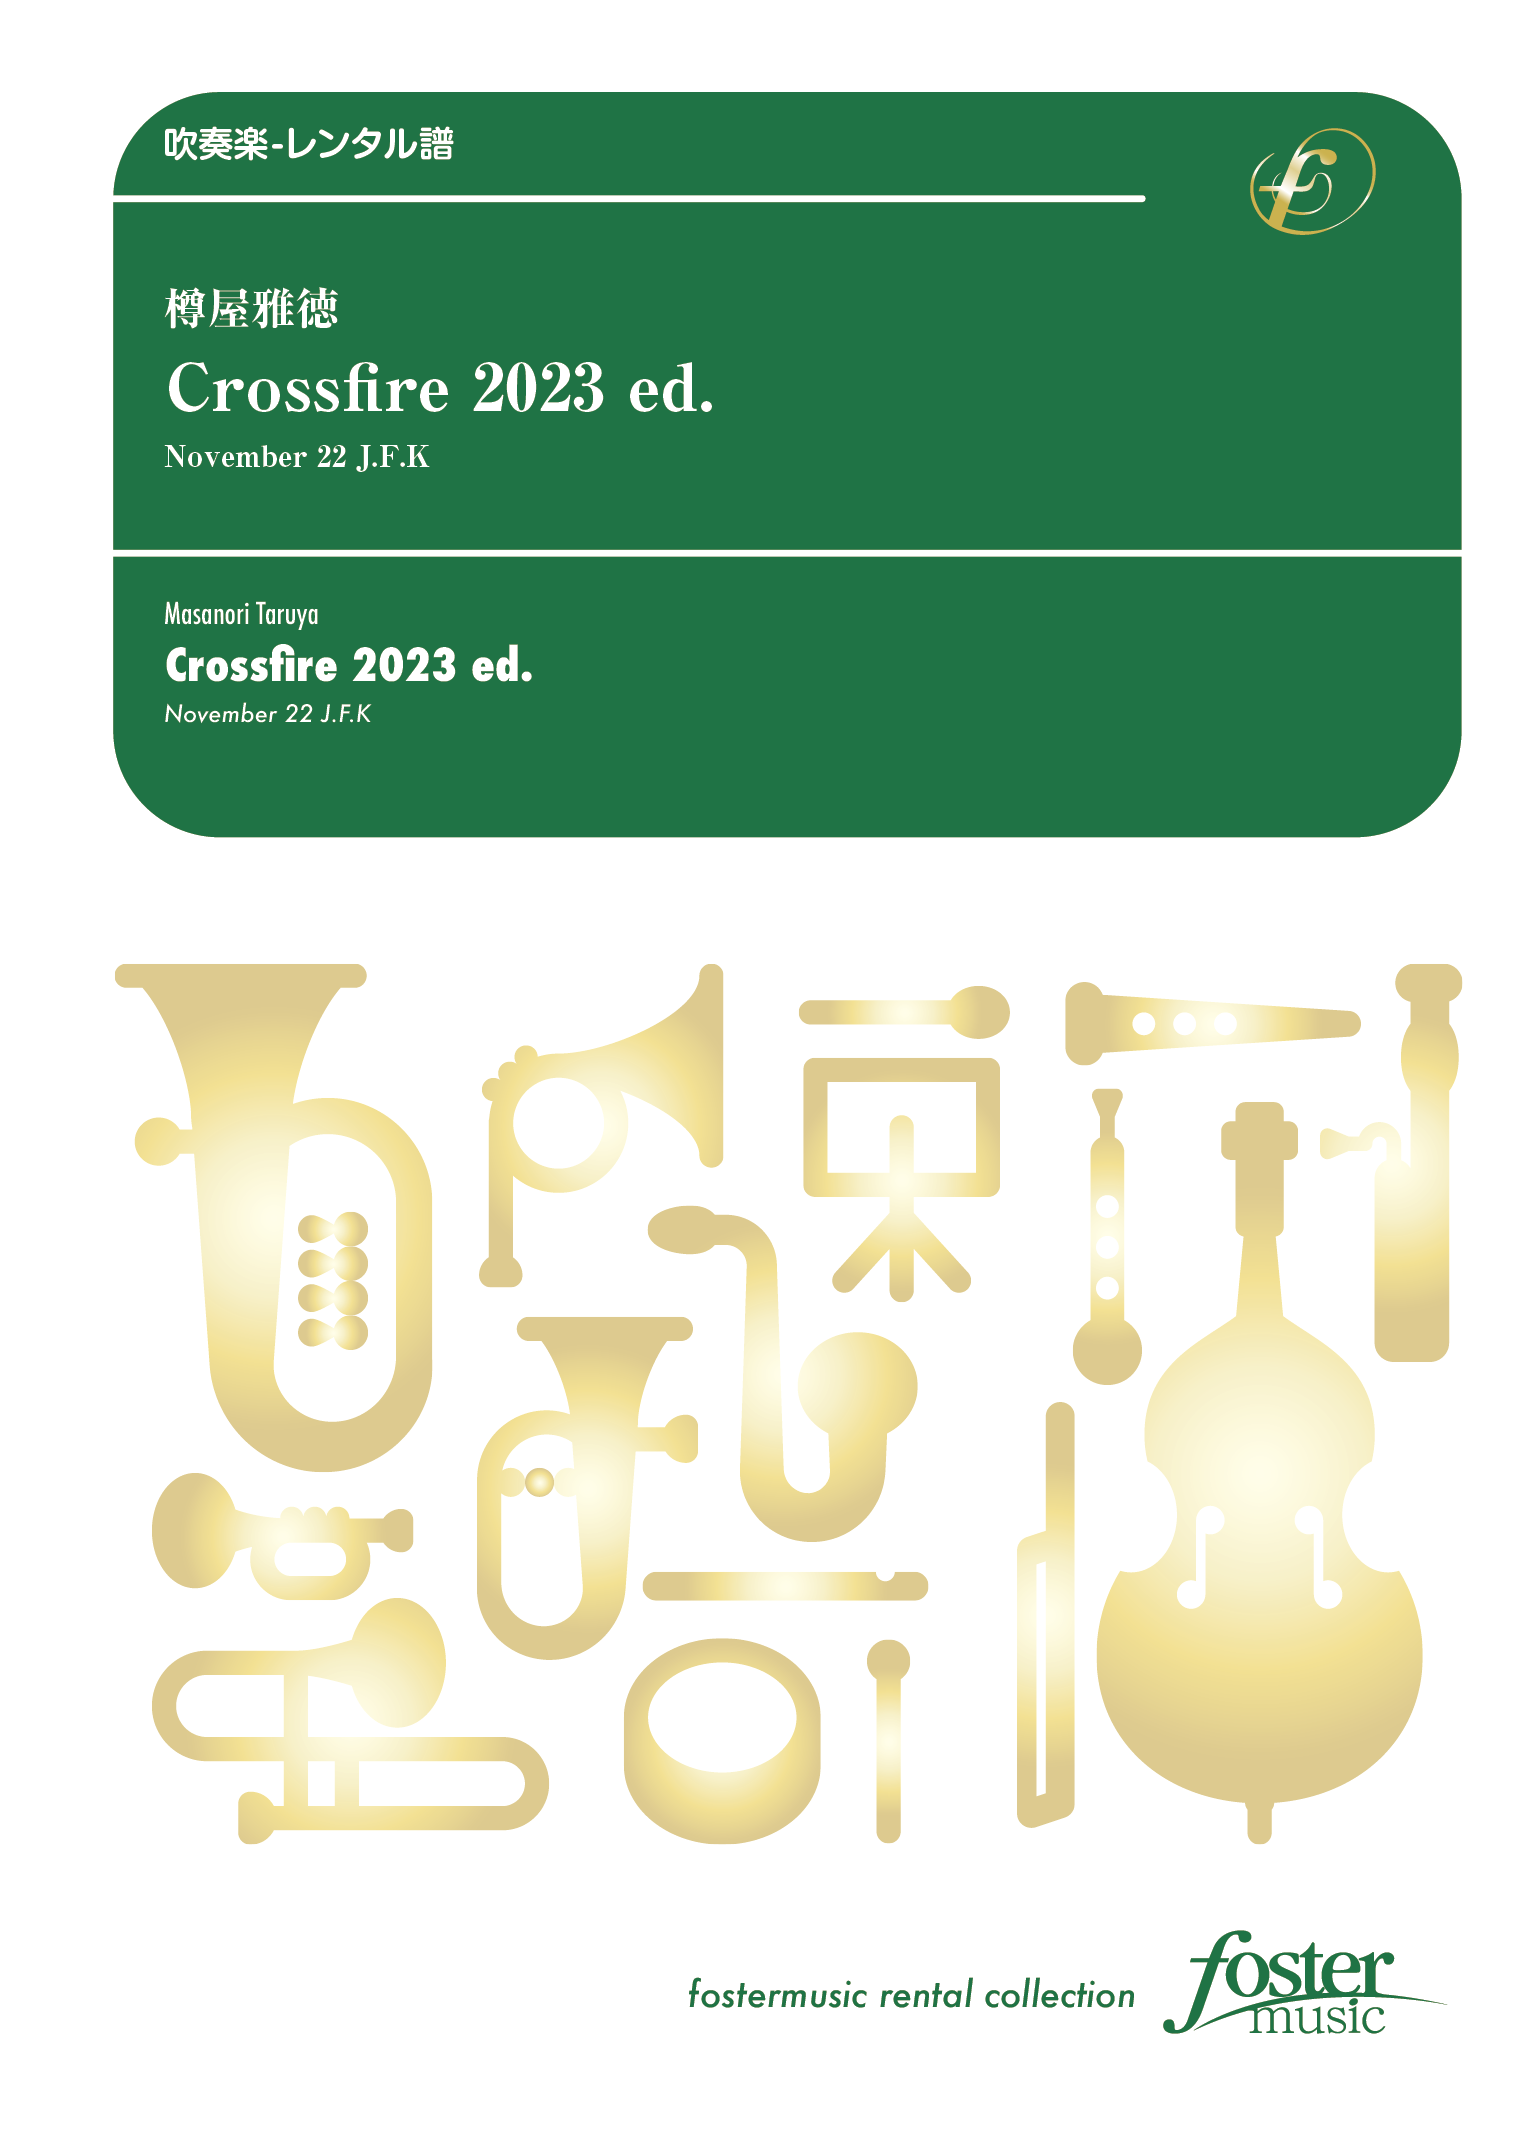 Crossfire 2023 ed. - November 22 J.F.K：樽屋雅徳 [吹奏楽大編成-レンタル譜]